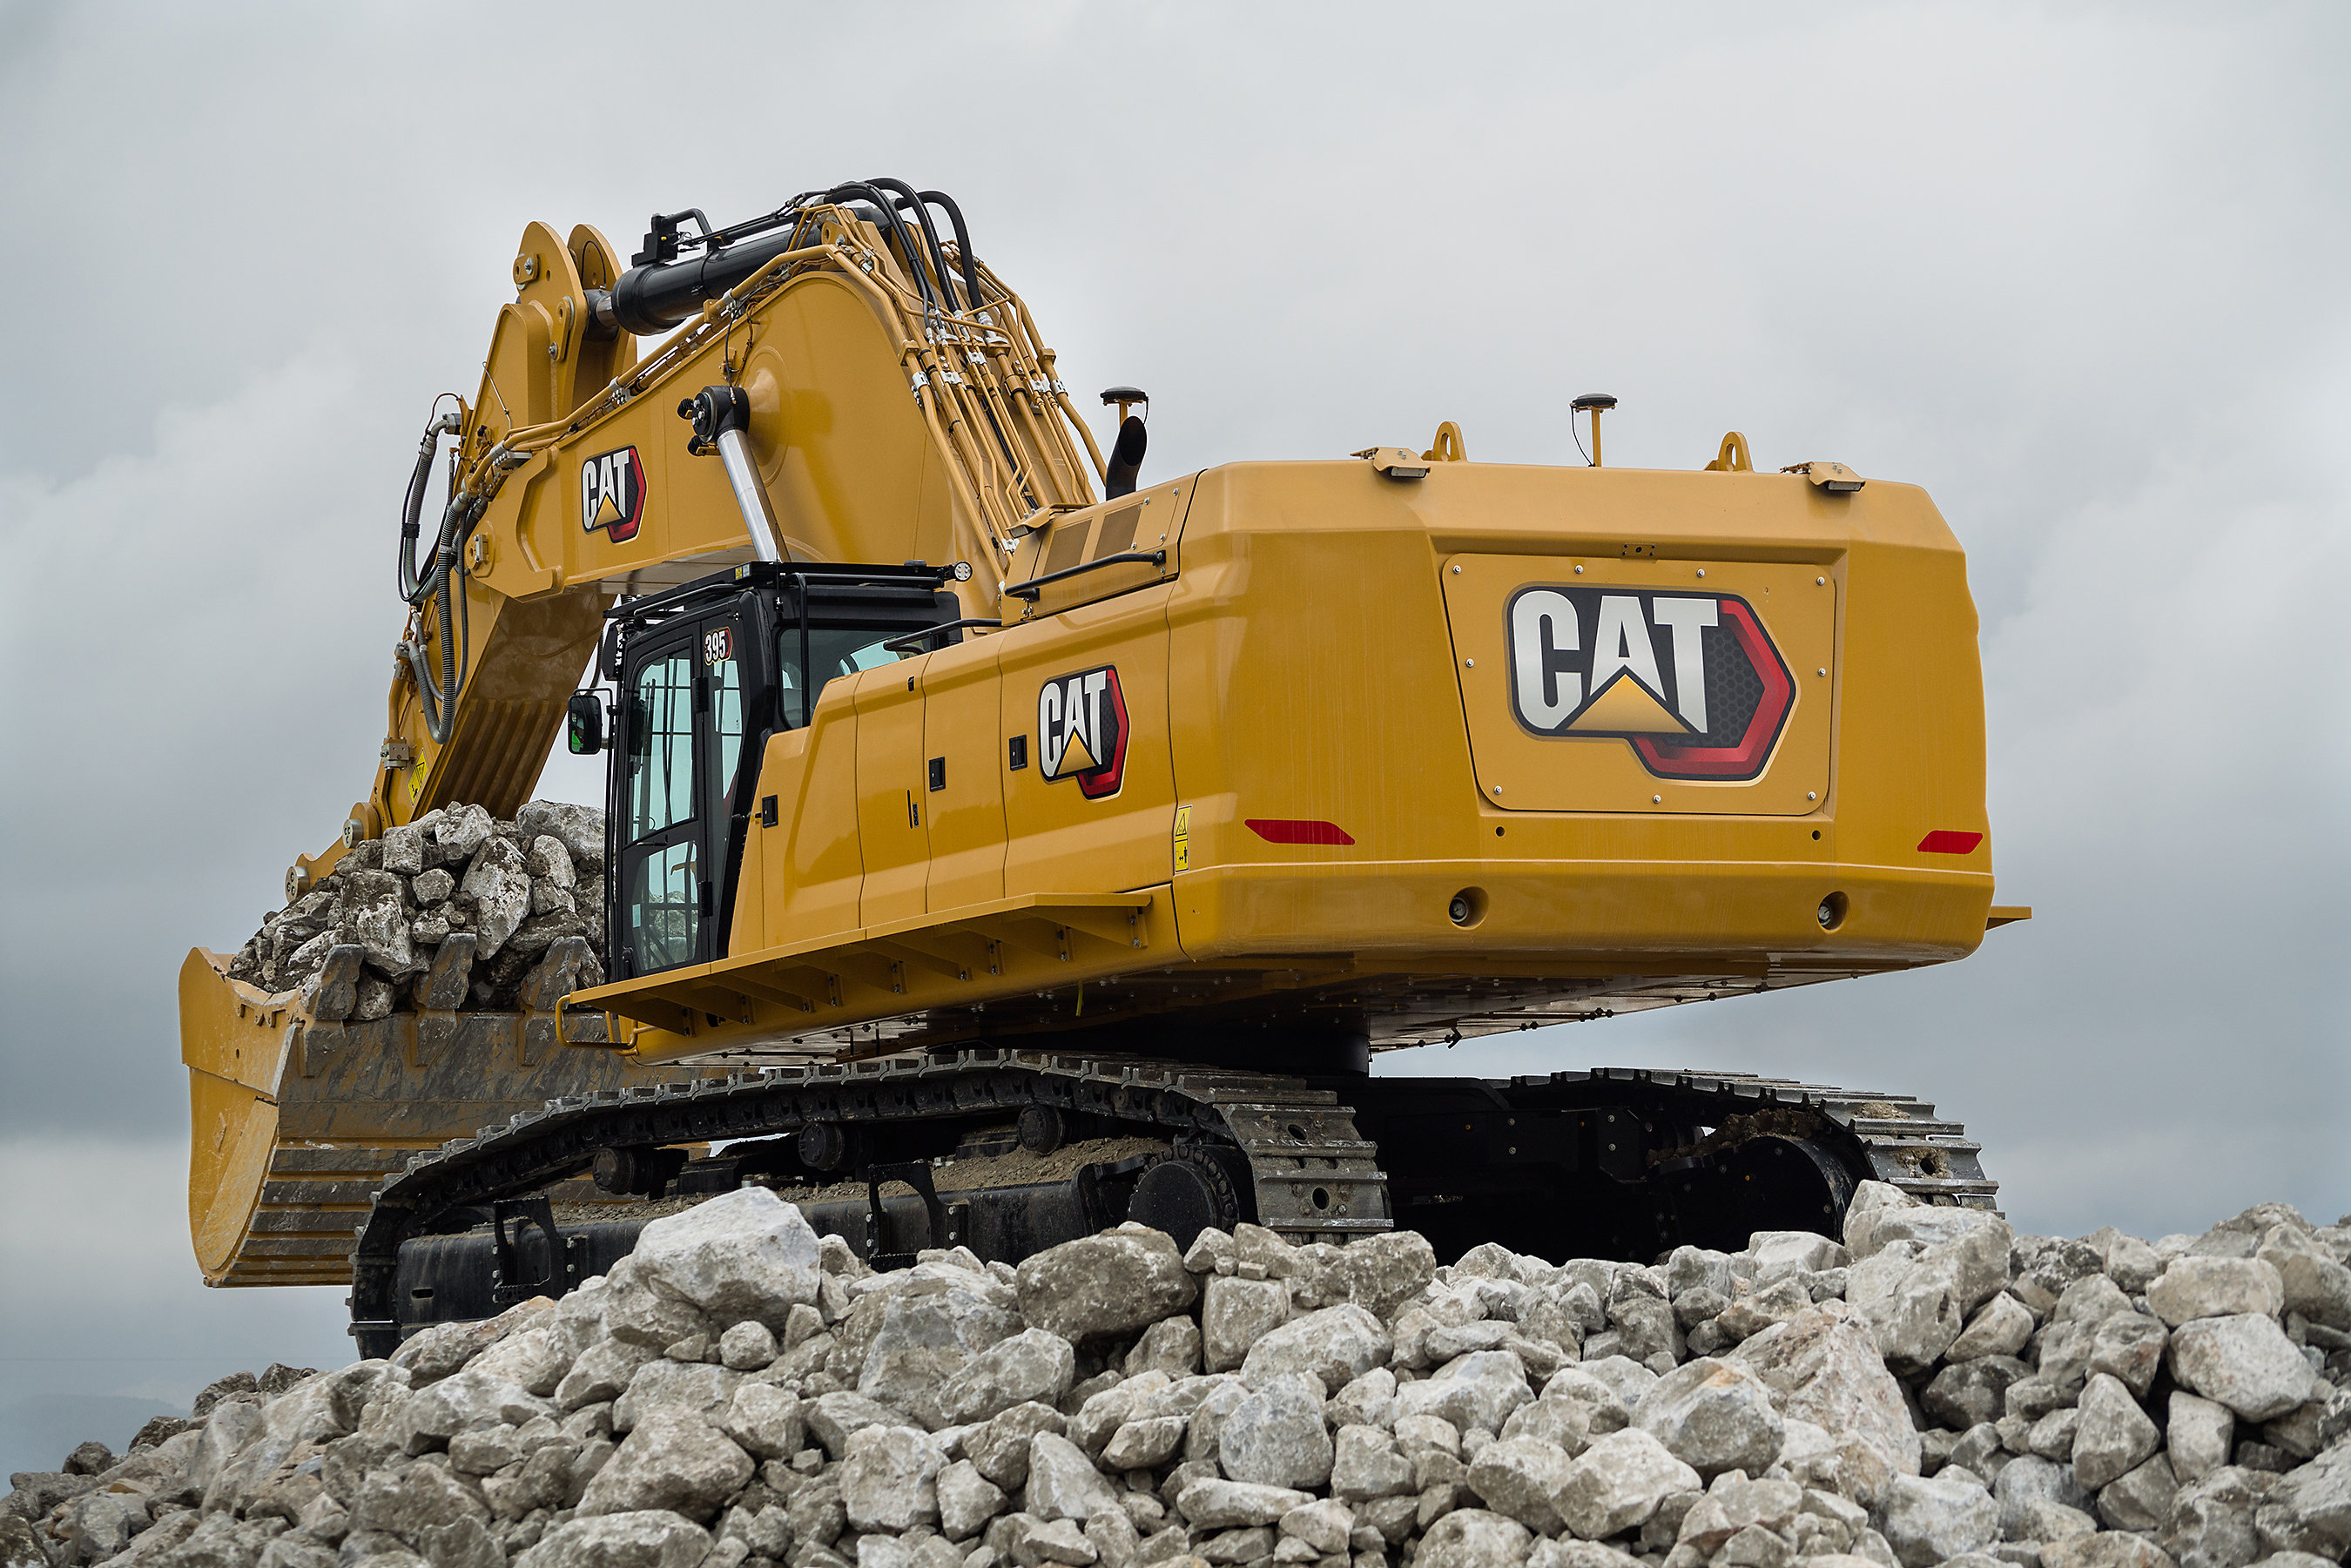 Cat 395 excavator